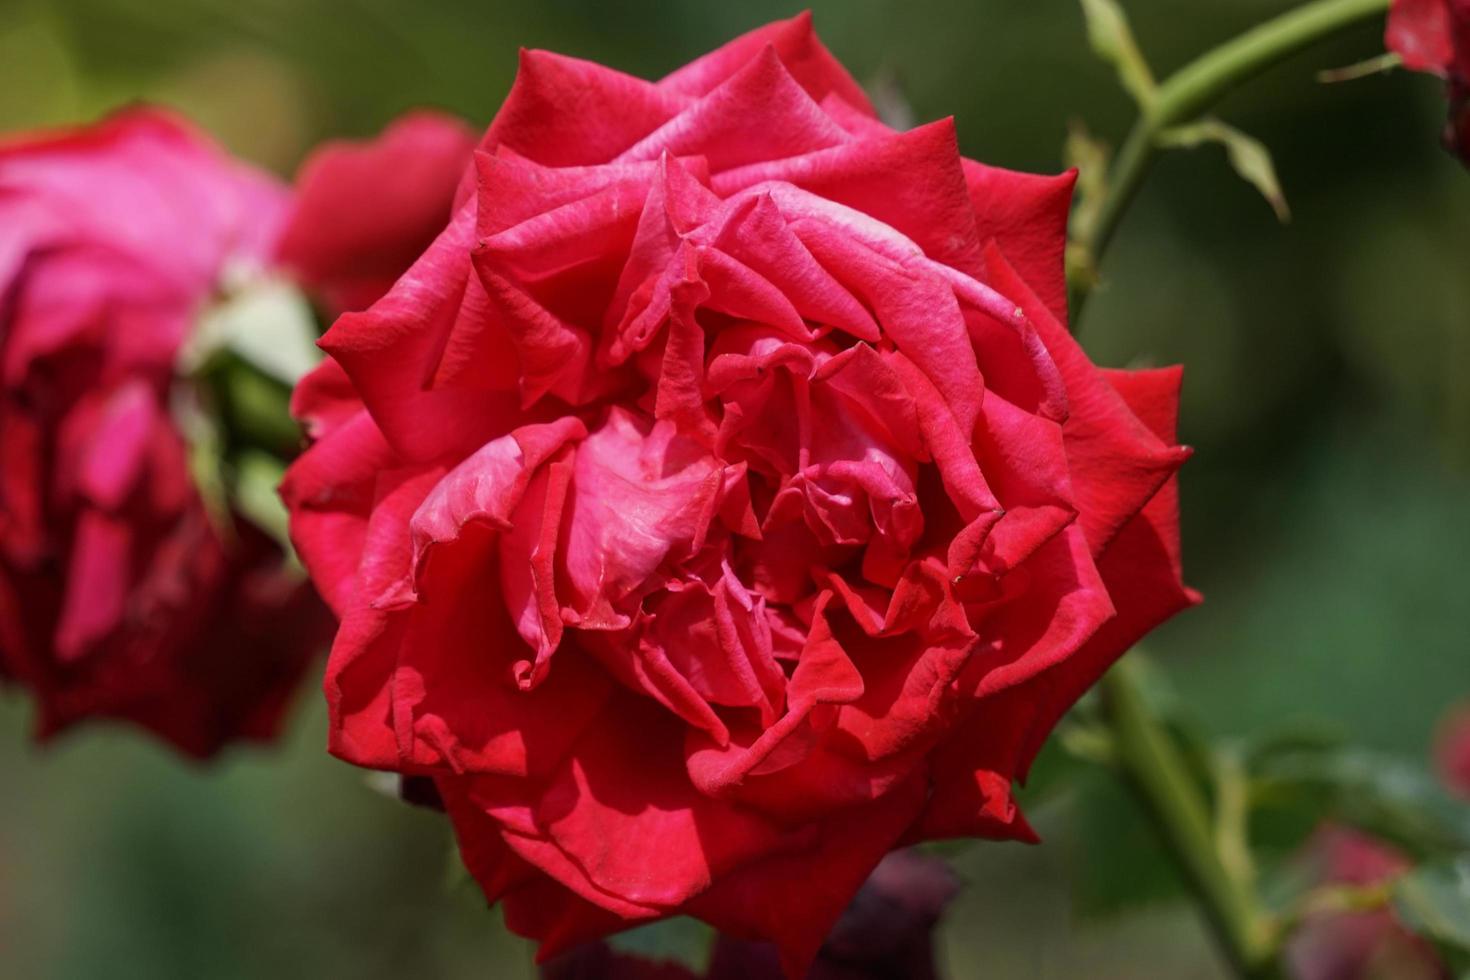 primo piano di una rosa rossa foto